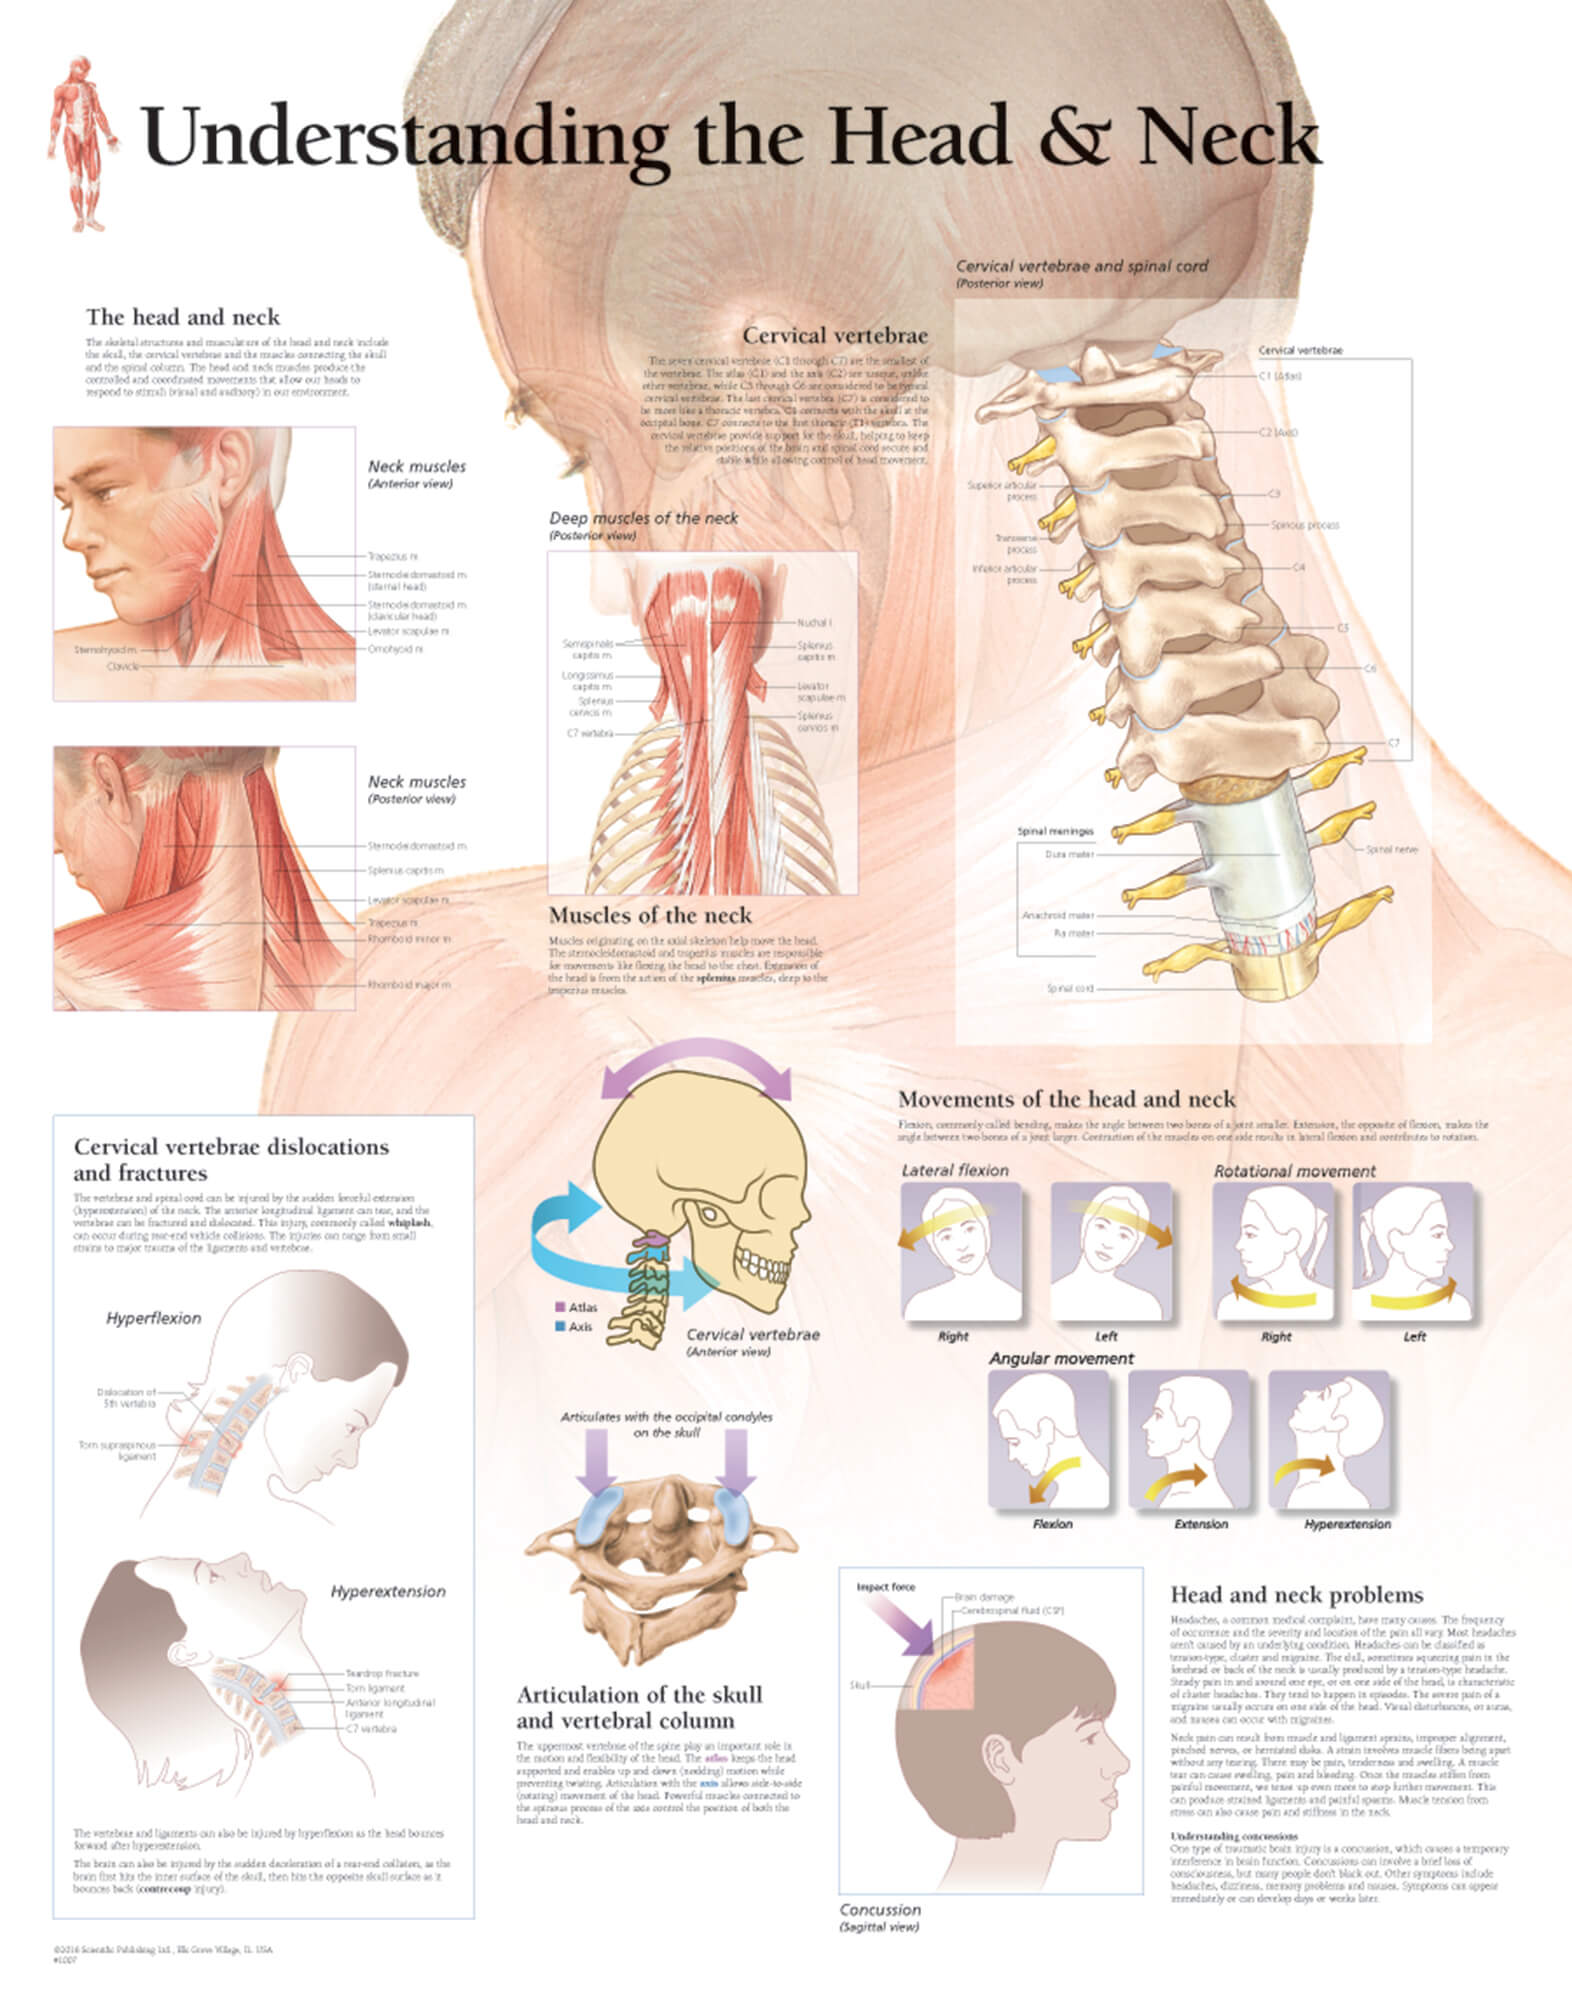 Understanding the Head & Neck | Scientific Publishing